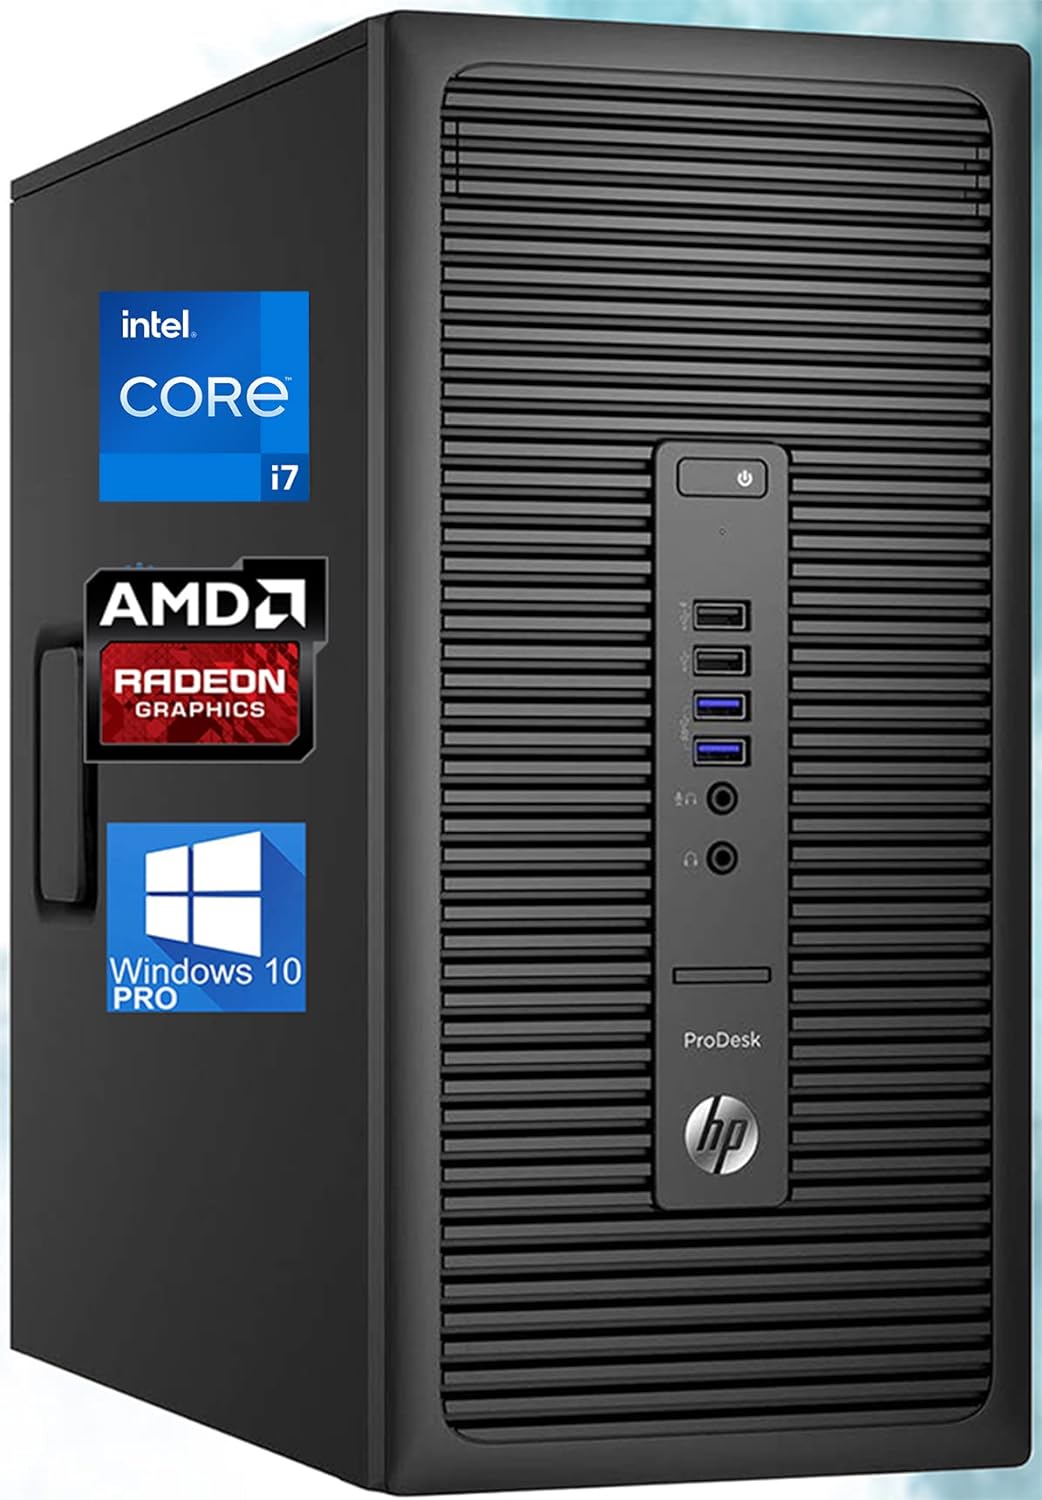 HP 600 G2 ProDesk Mini-Tower PC, Intel Quad-Core i7-6700 Upto 4.0GHz, 16GB RAM, 512GB SSD, AMD R7 240 2GB HD Graphics 4K, AC Wi-Fi, Bluetooth, HDMI, DisplayPort, Windows 10 Pro (Renewed)